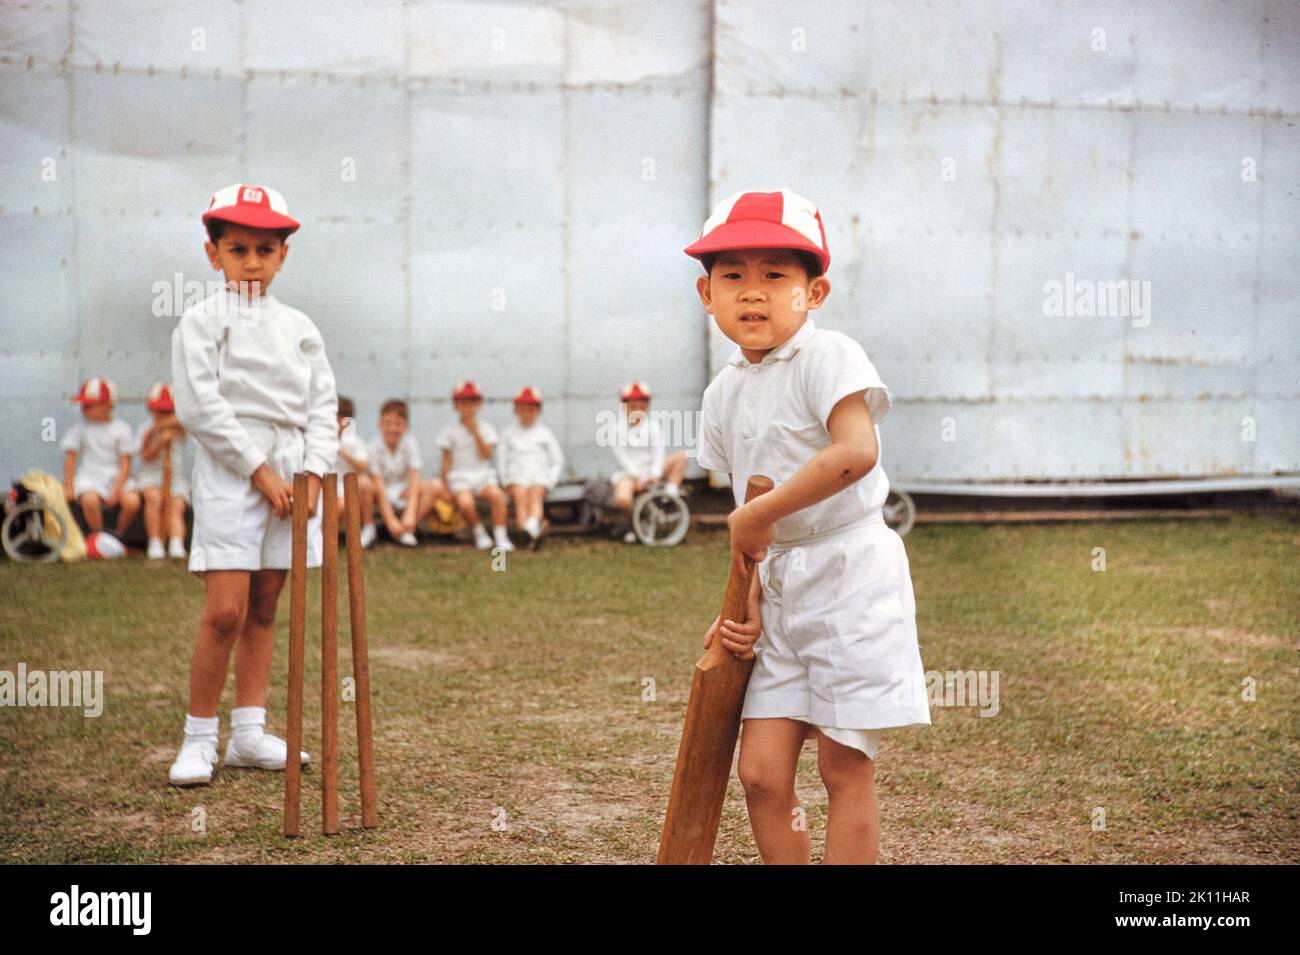 Niños Jugando Cricket, Escuela de Niños, Hong Kong Británico, Colección Toni Frissell, 1959 Foto de stock